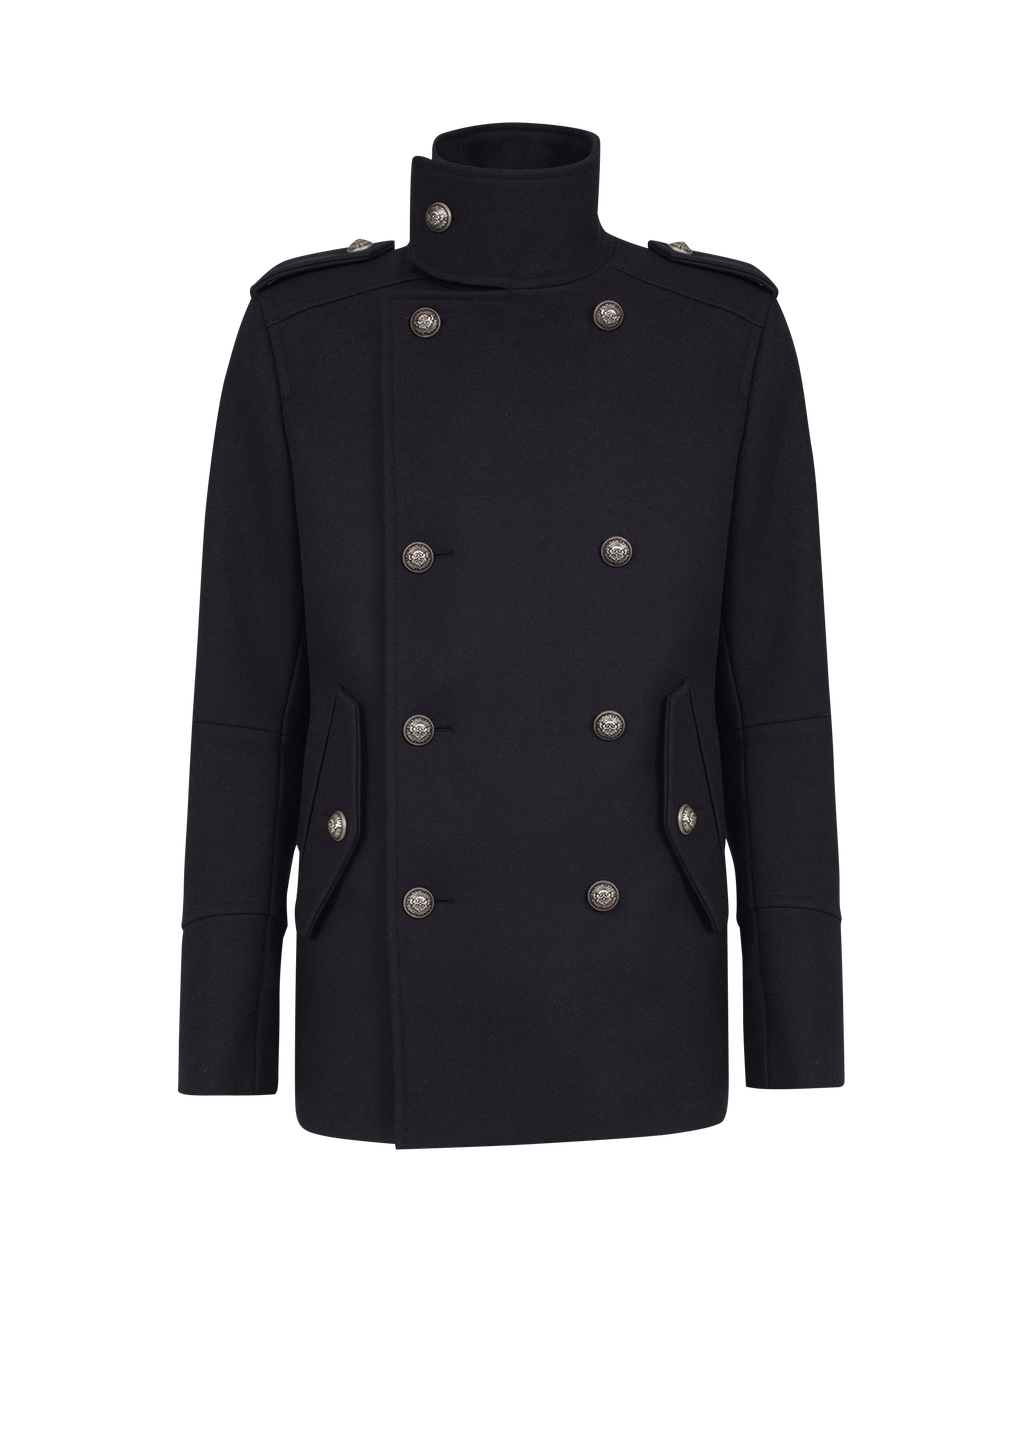 Cabanjacke aus Wolle im Military-Stil mit doppelreihigem silberfarbenem Knopfverschluss, schwarz, hi-res